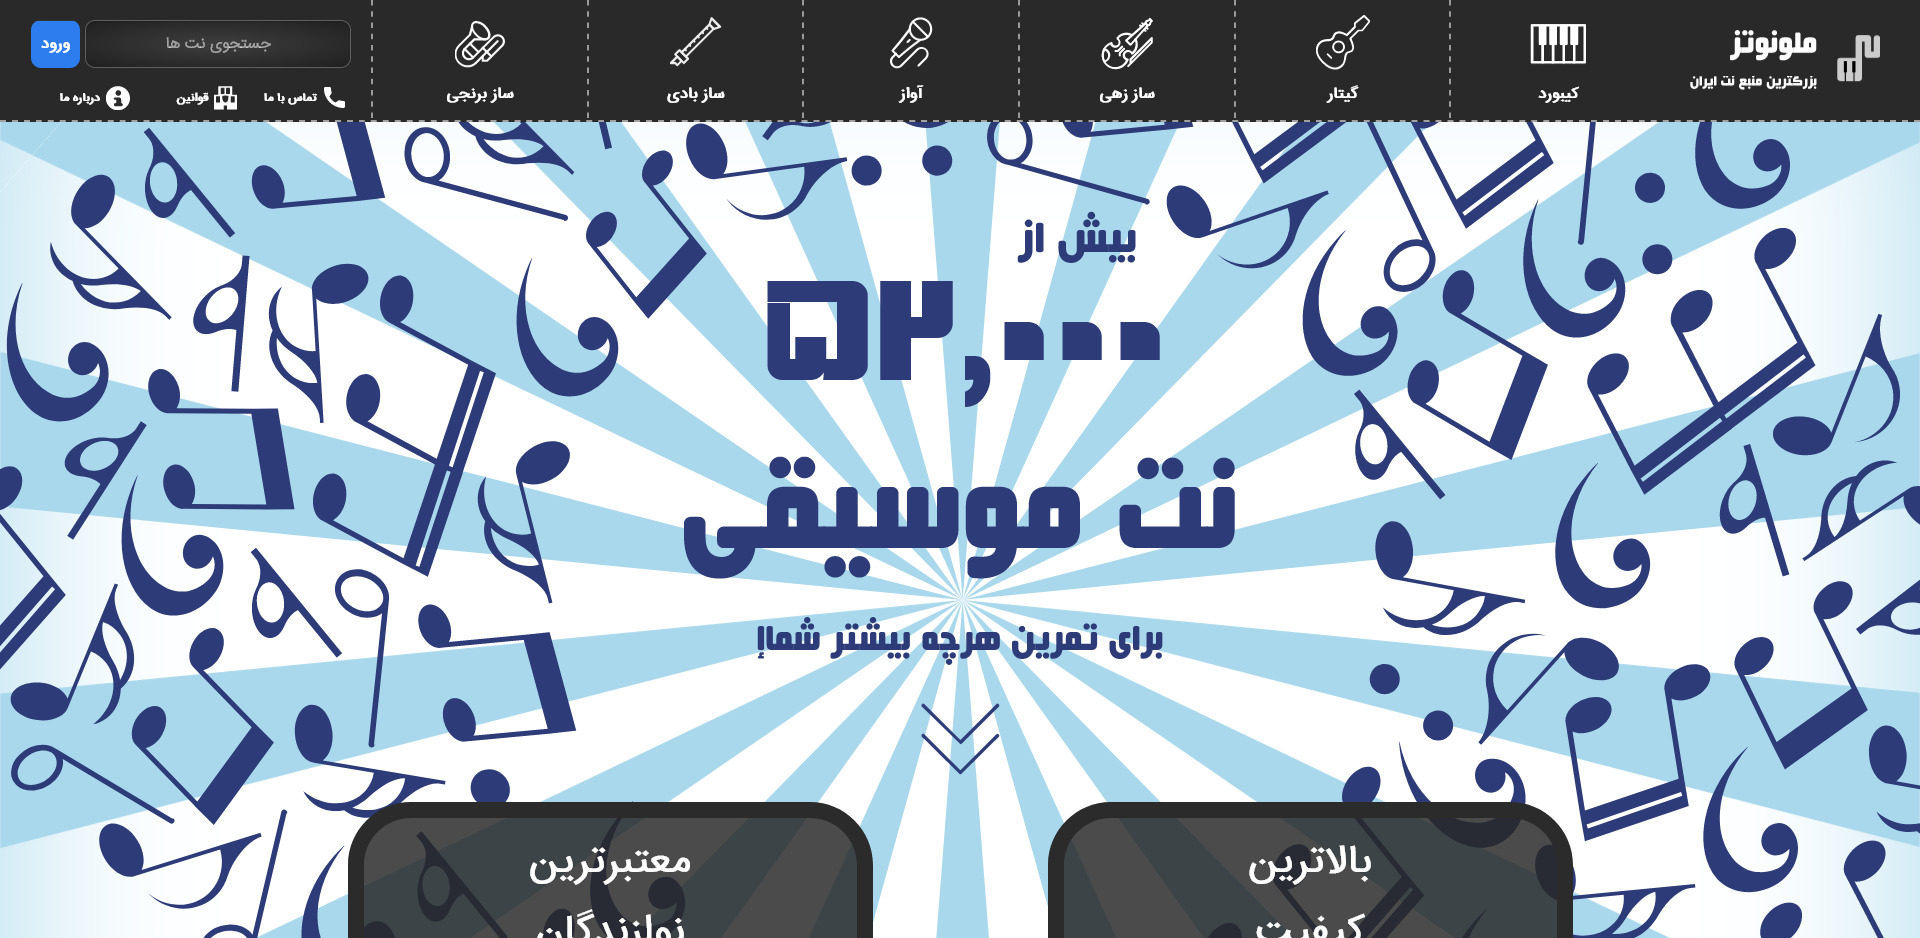 هدر بزرگترین مرجع نوت موسیقی ایران وبسایت ملونوتز خرداد ۱۴۰۰